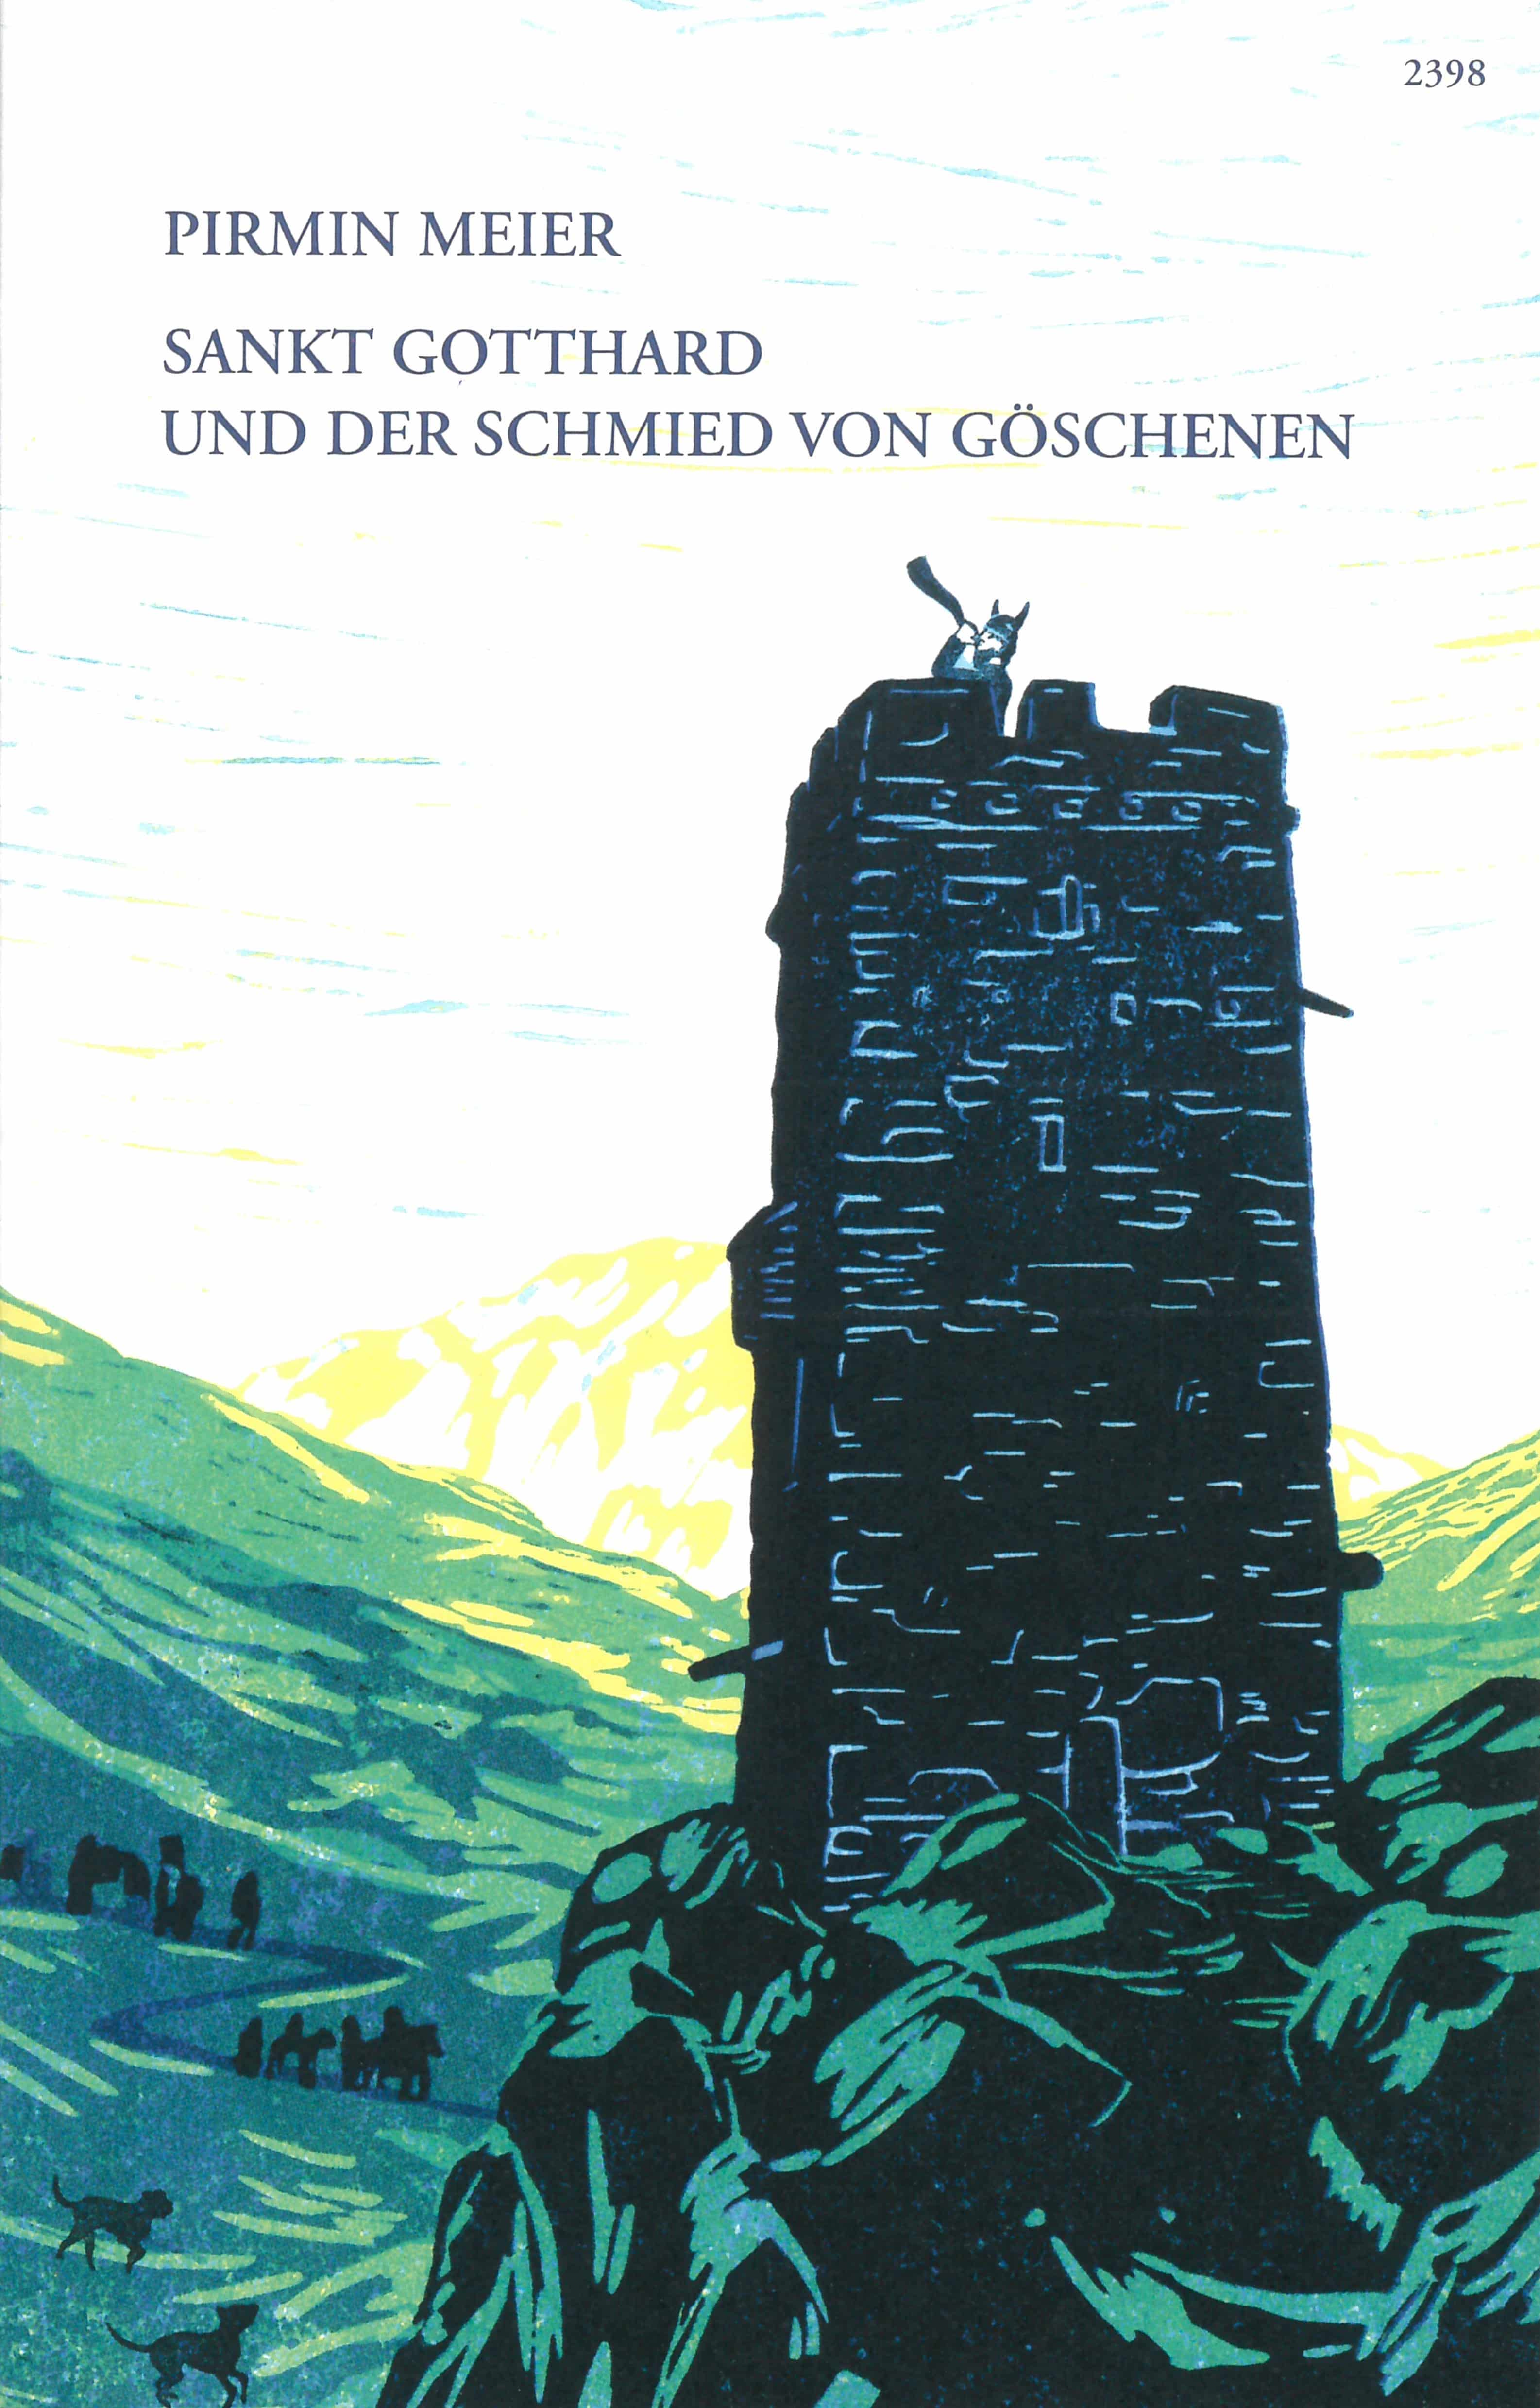 Sankt Gotthard und der Schmied von Goeschenen, ein Buch von Pirmin Meier, Illustration von Laura Jurt, SJW Verlag, Sagen